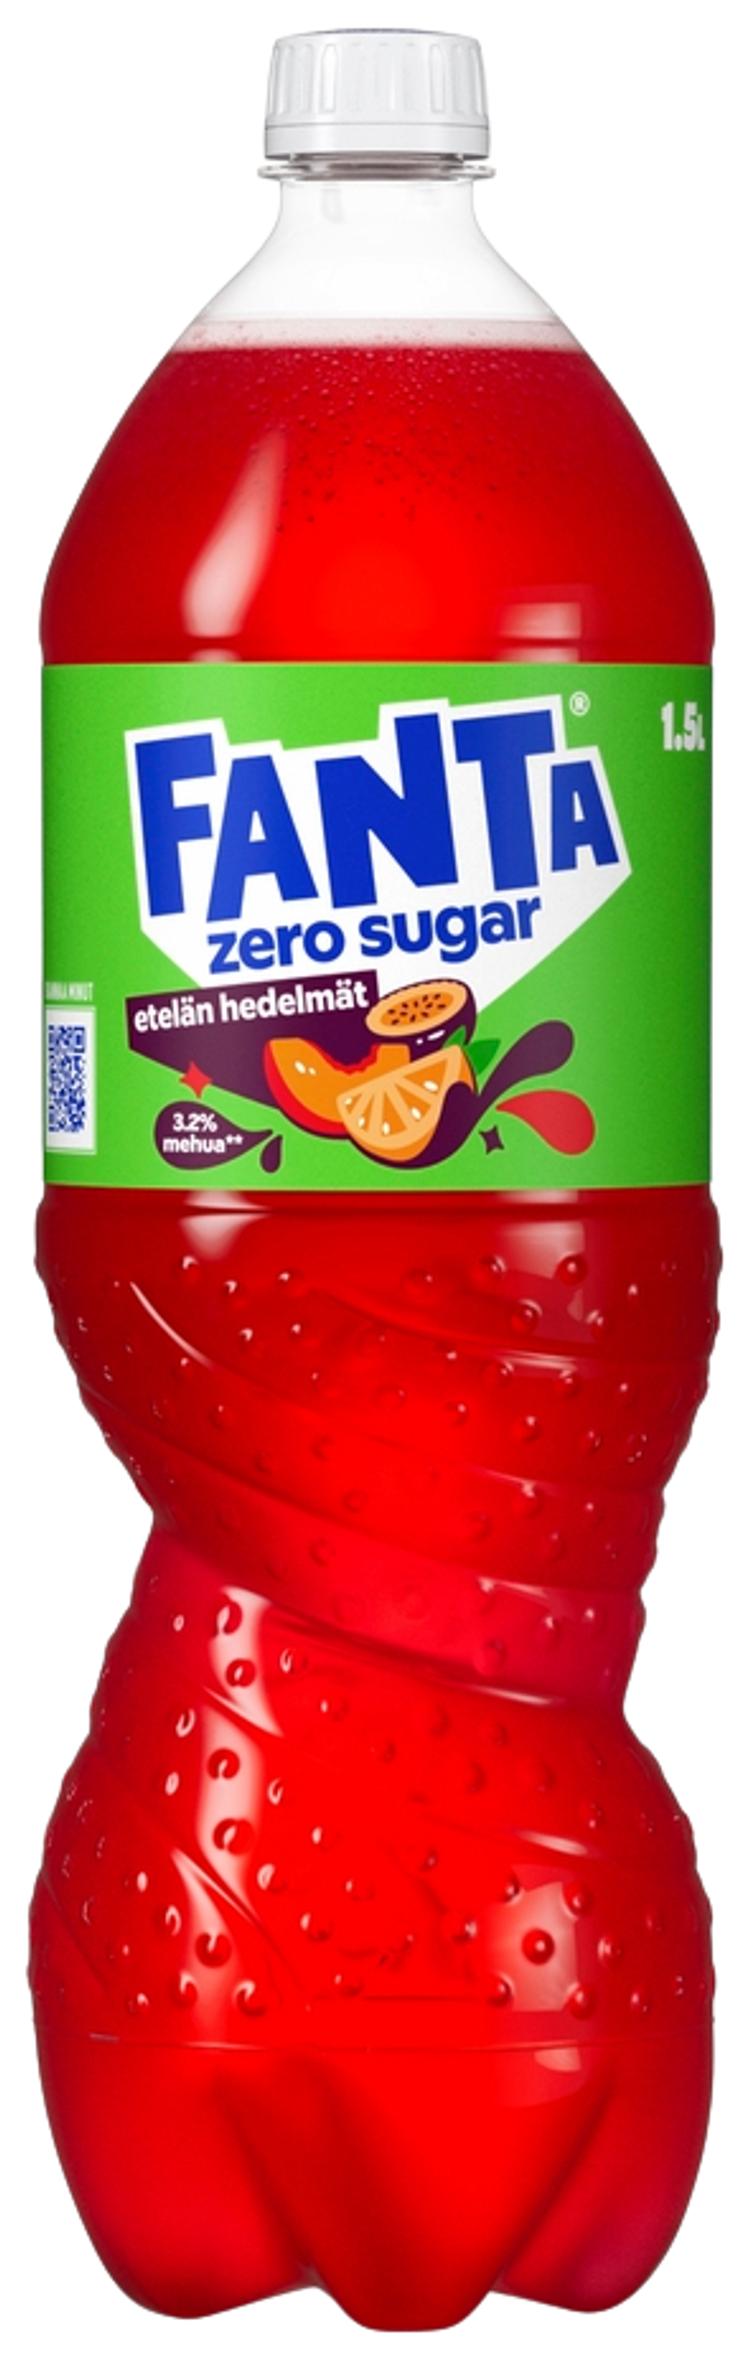 Fanta Zero Etelän Hedelmät sokeriton virvoitusjuoma muovipullo 1,5 L